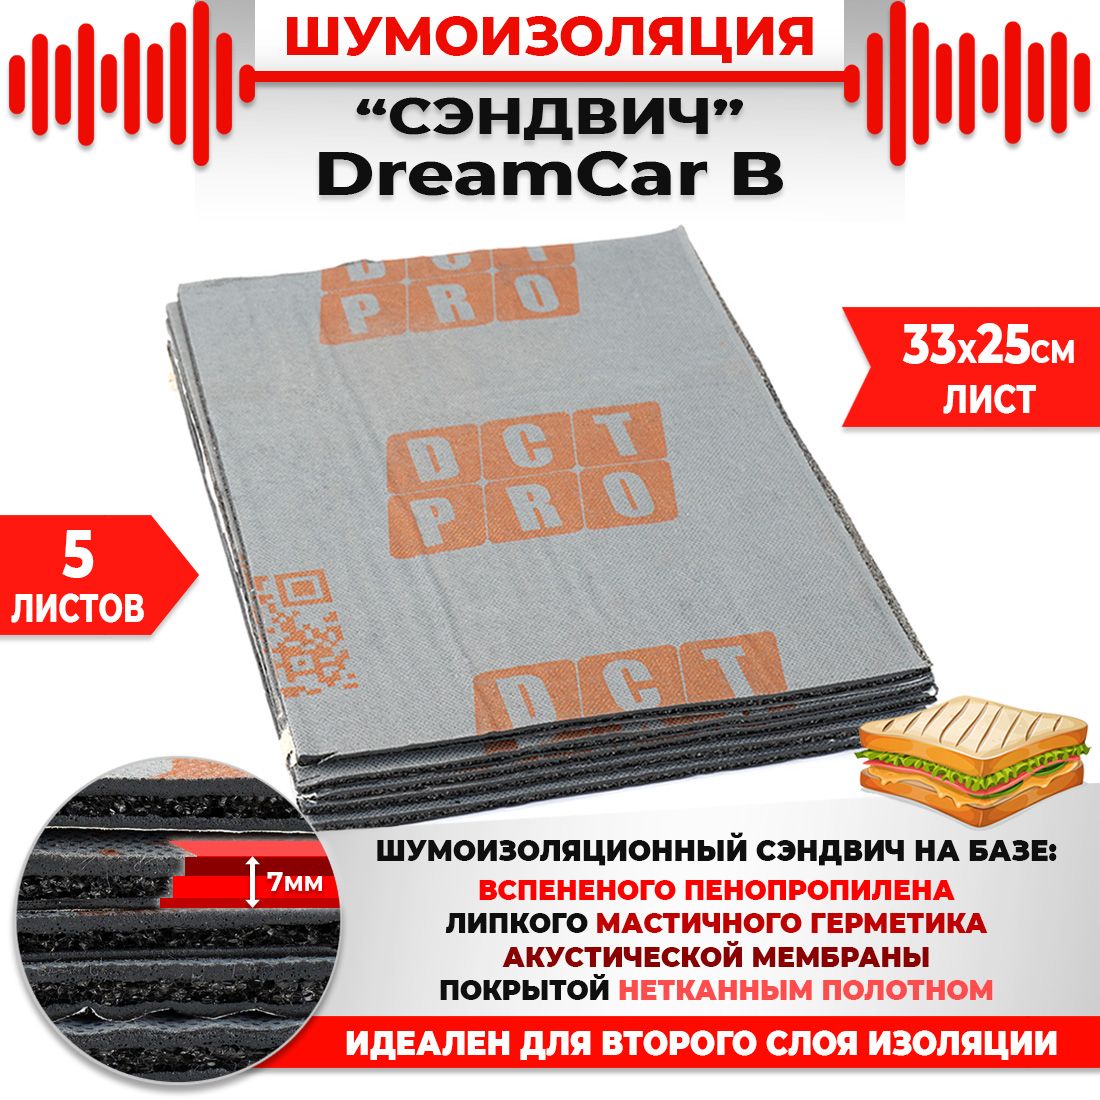 5шт. Шумомоизоляция СЭНДВИЧ Быстрого монтажа DreamCar B 33х25см 7мм 5 листов